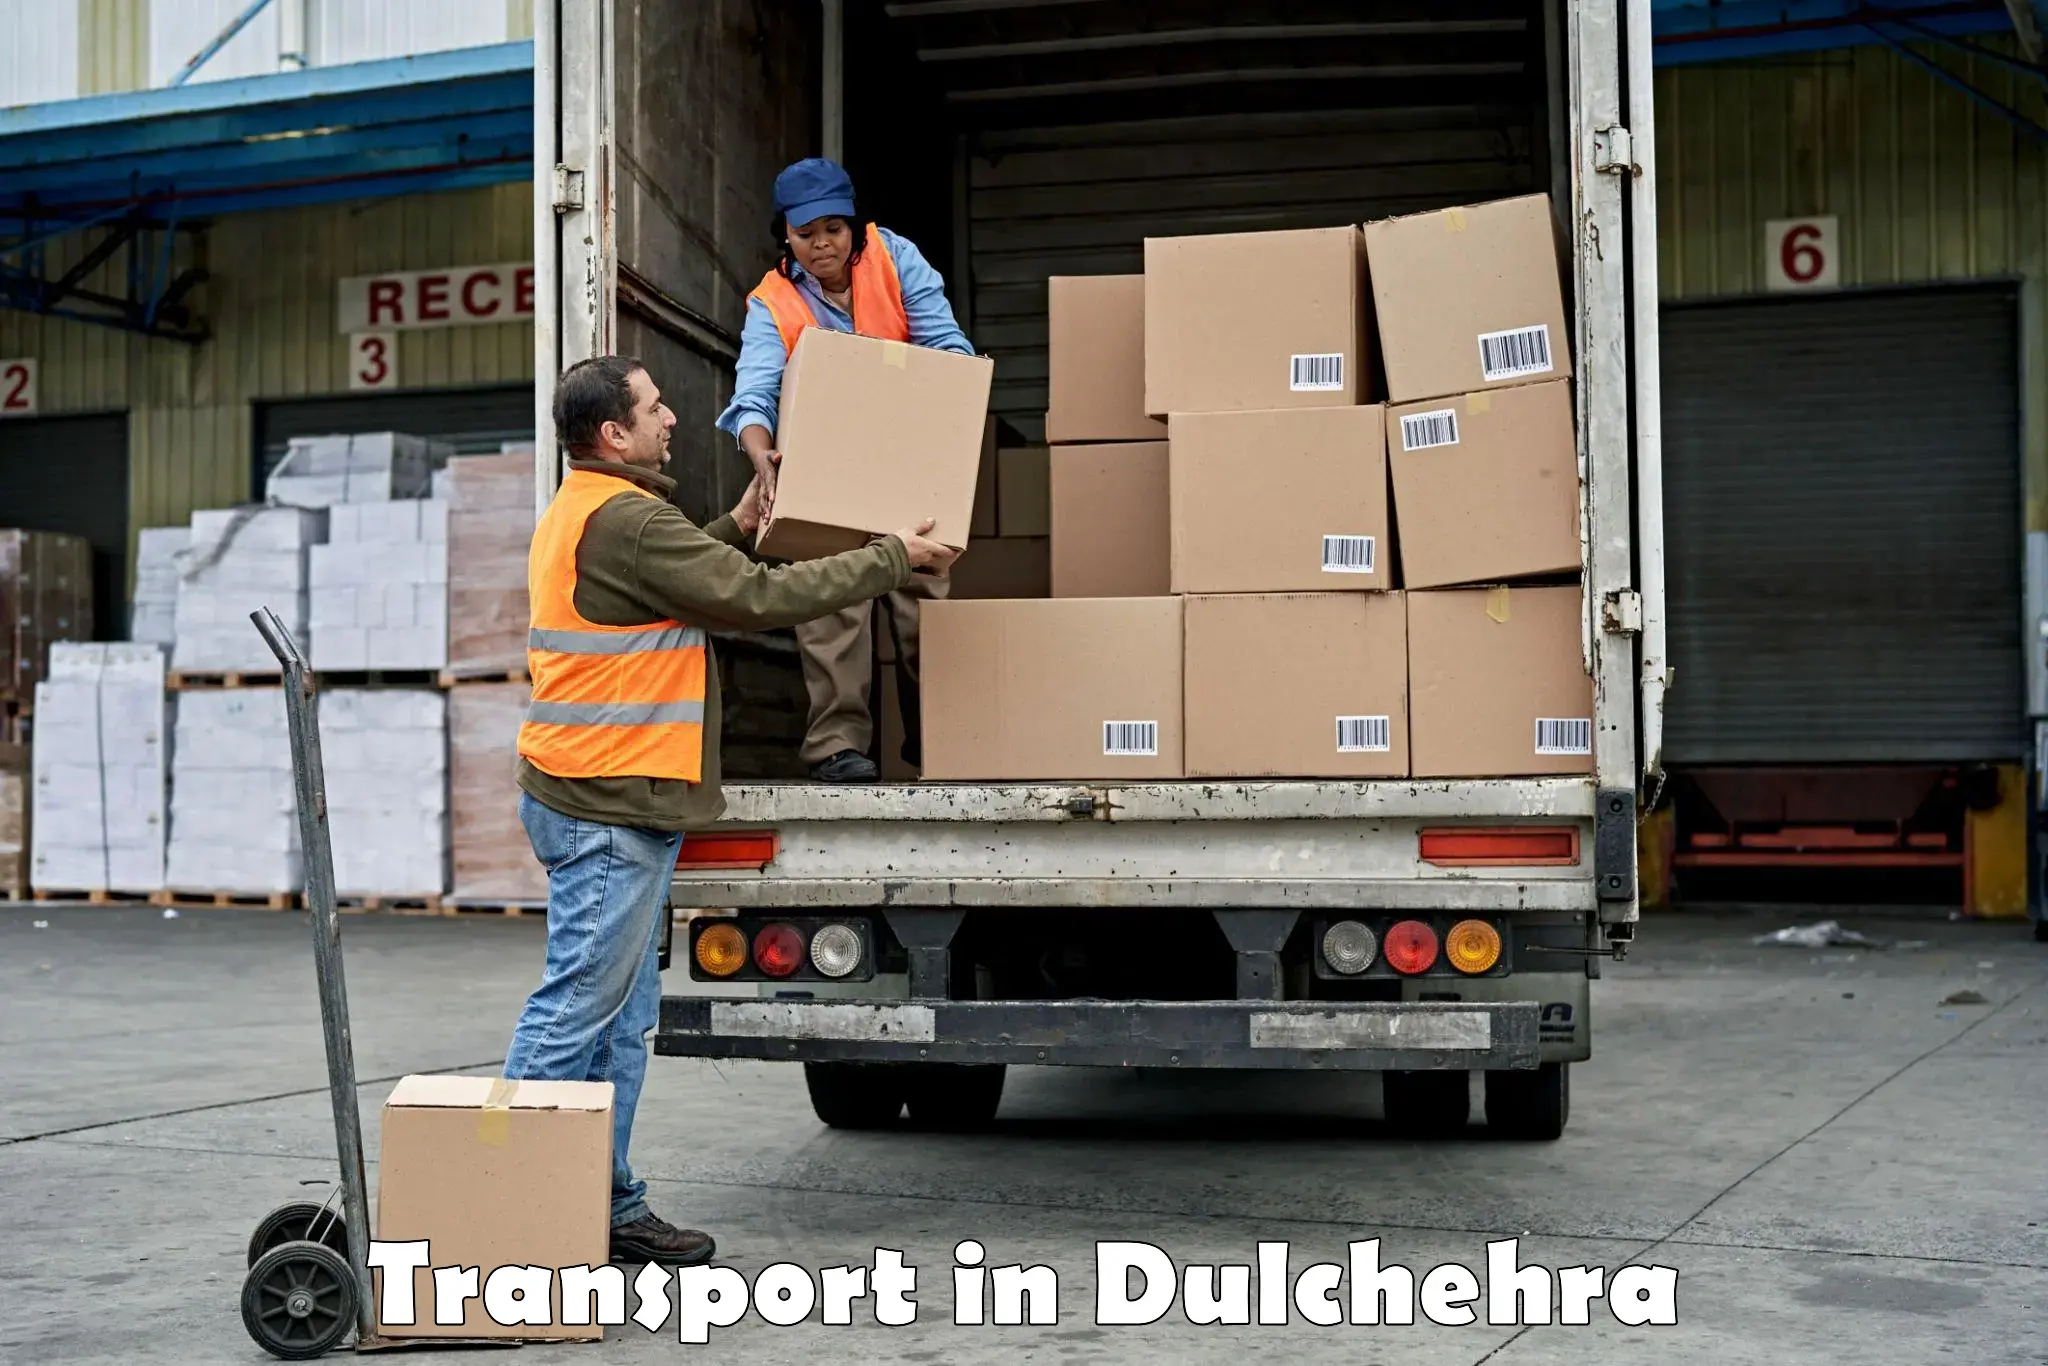 Interstate transport services in Dulchehra